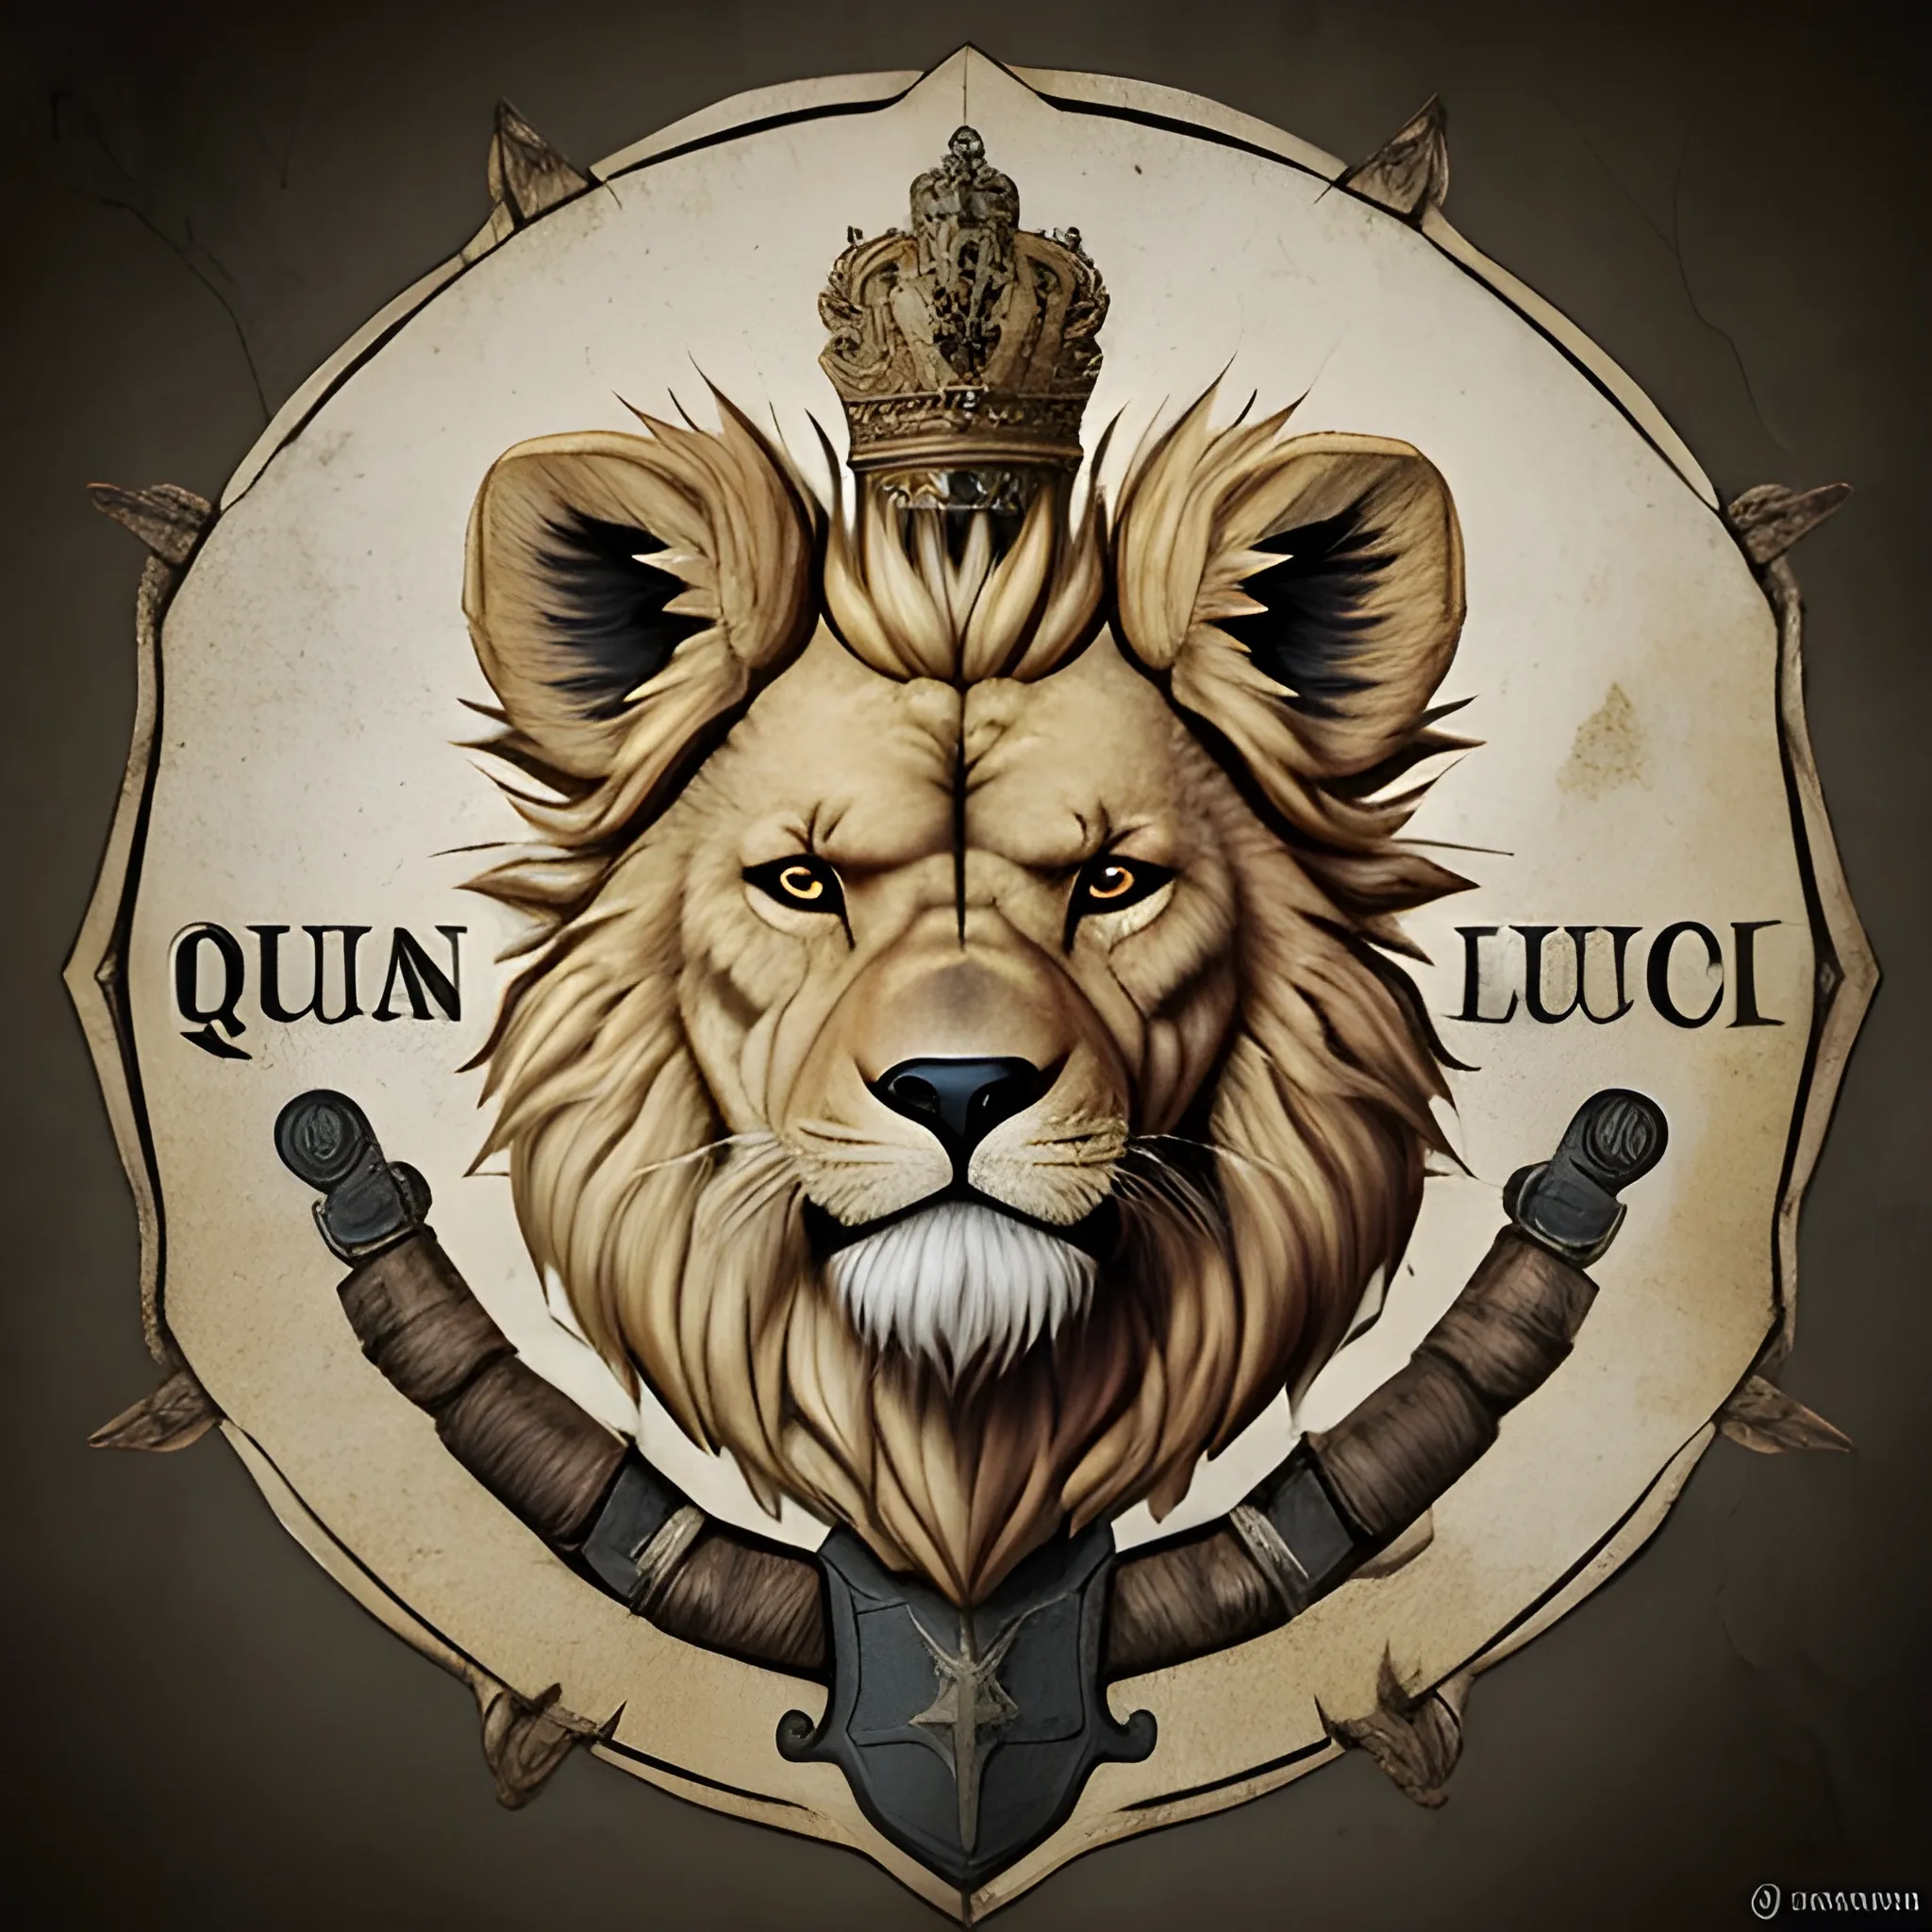 Diseña una imagen épica de un león fuerte y musculoso equipado para la batalla, con armadura reluciente y un escudo majestuoso, listo para enfrentarse a cualquier desafío